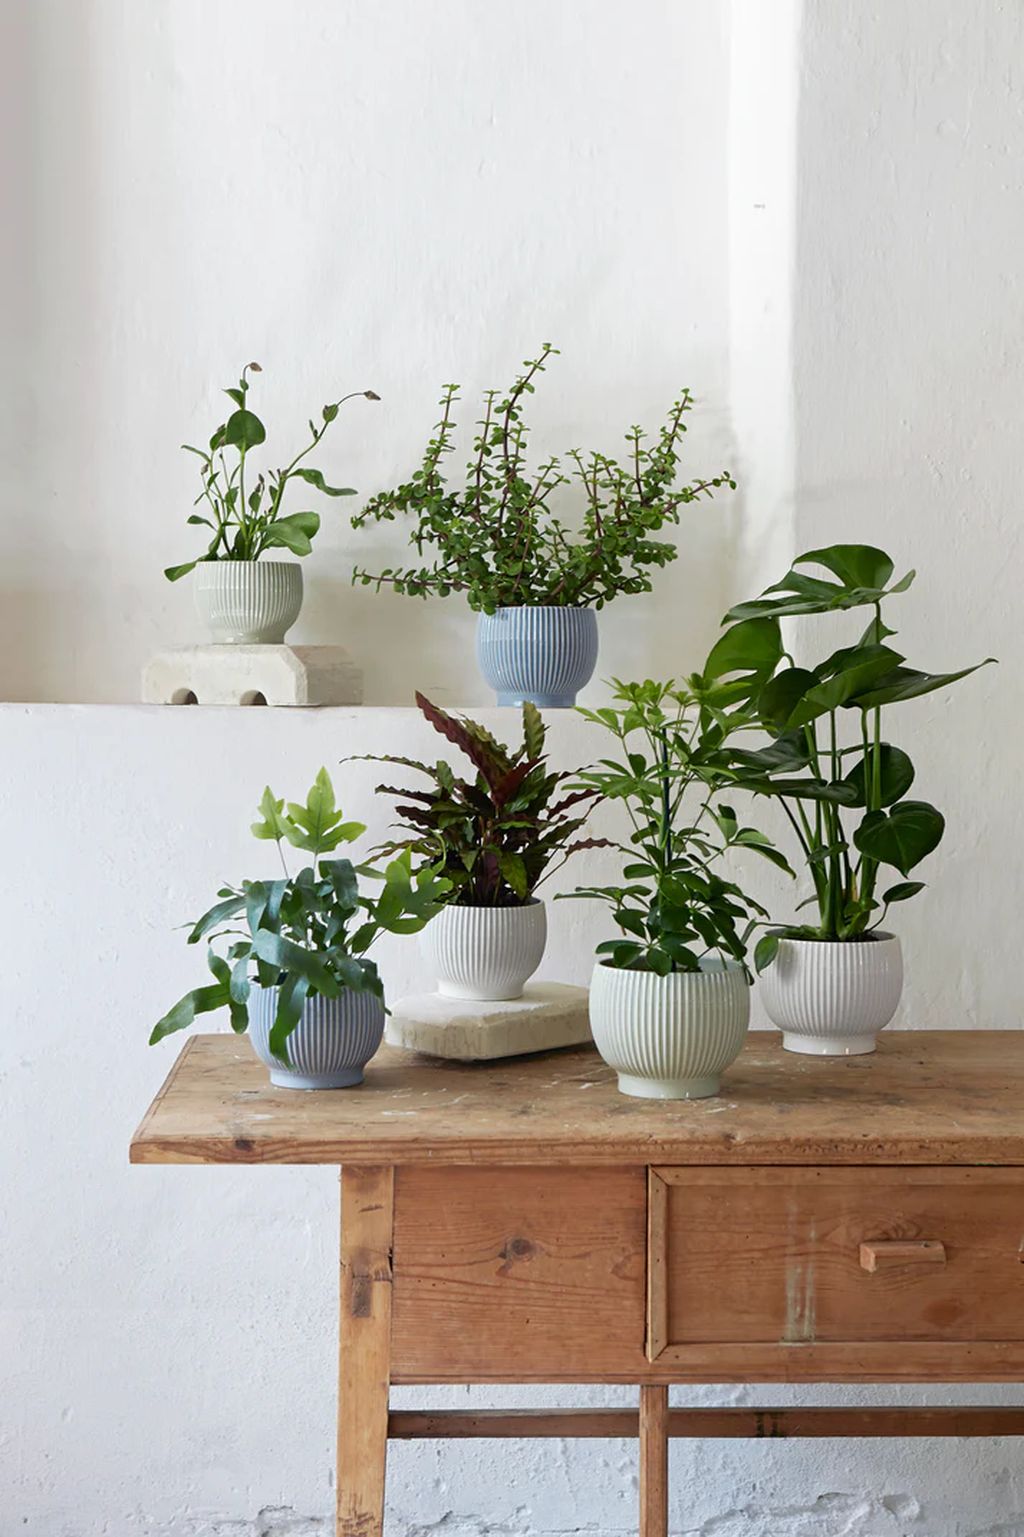 Knabstrup Keramik Flowerpot With Wheels ø 16.5 Cm, Mint Green